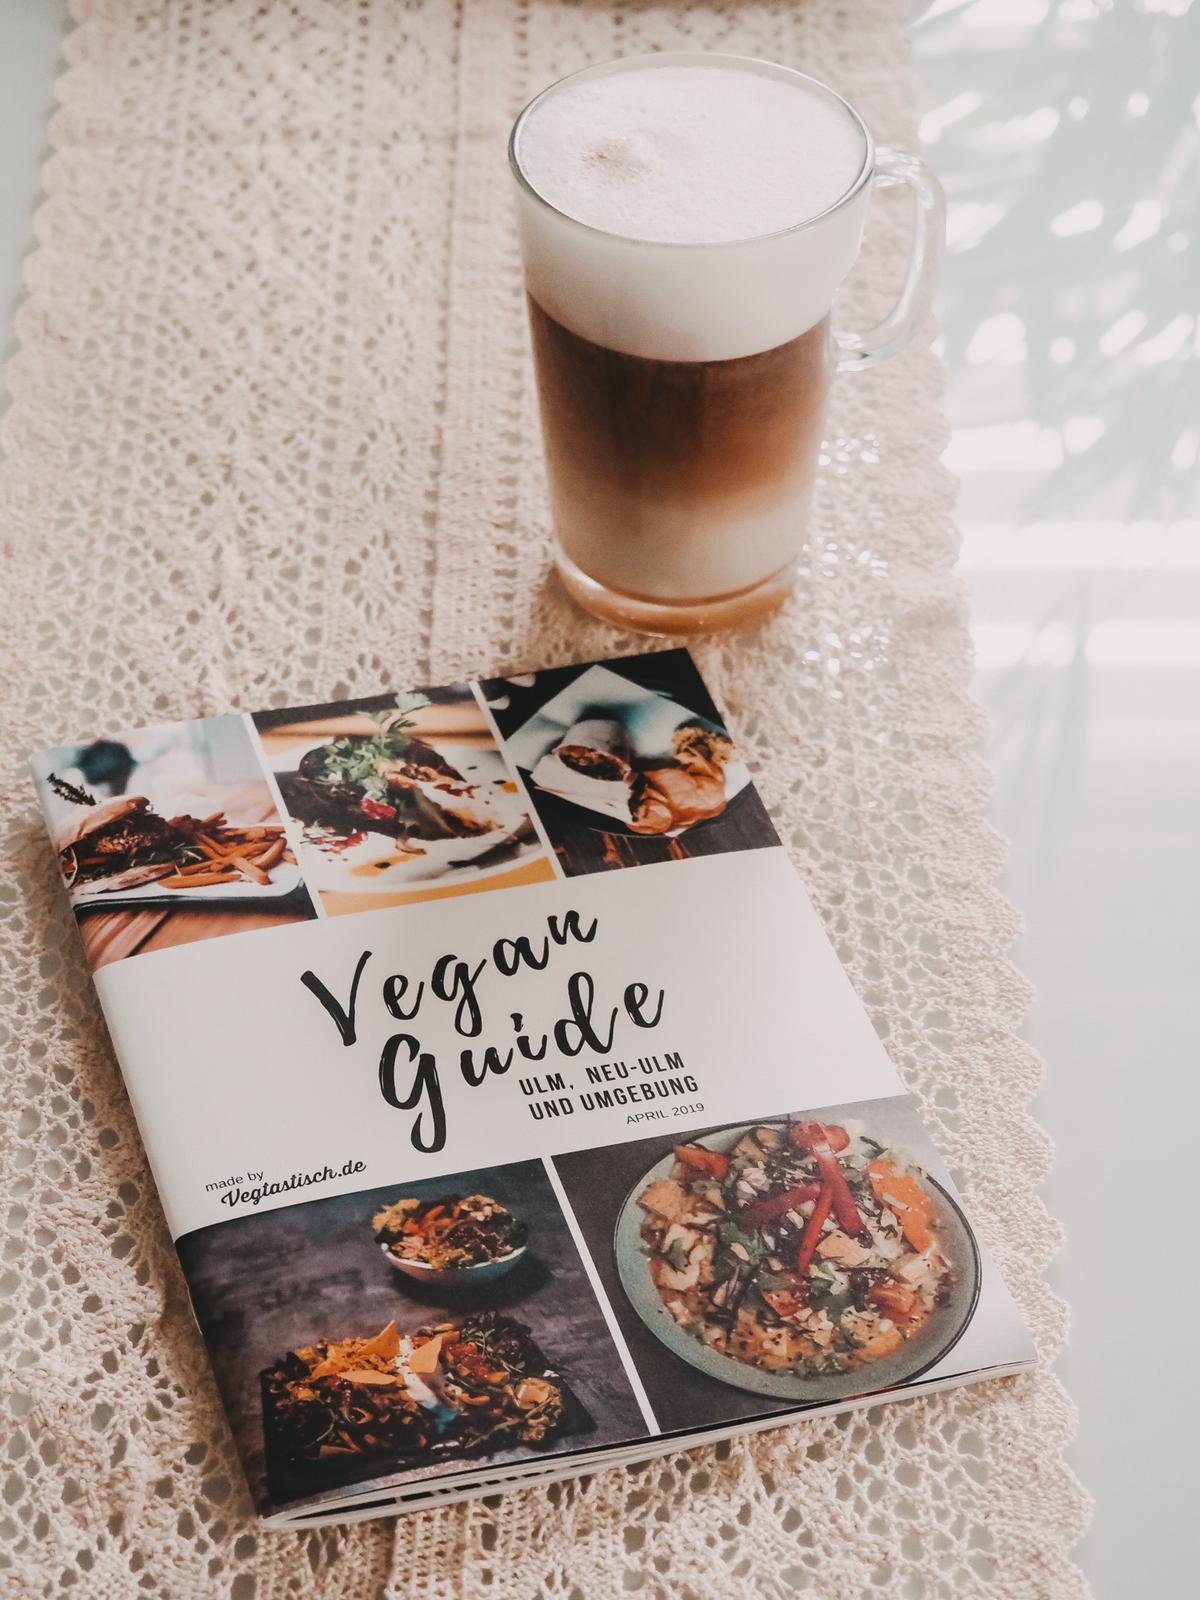 Der Vegan Guide von Vegtastisch für Ulm und Augsburg beinhaltet Cafés, Restaurants und Bioläden und top Shopping-Adressen für einen nachhaltigen Lebensstil. 